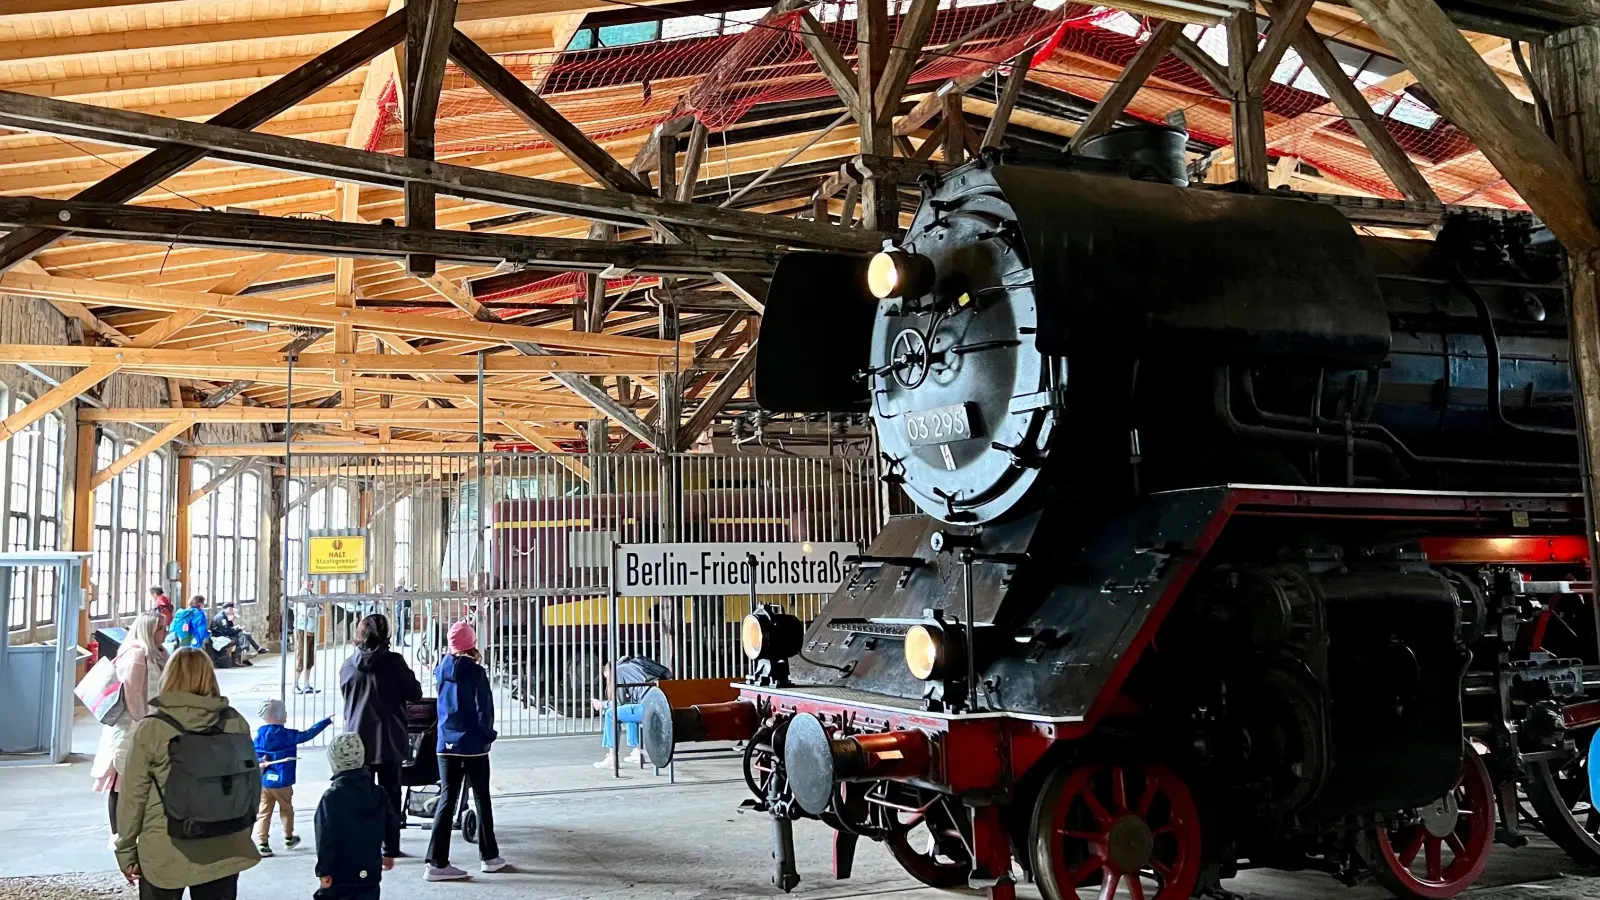 Zum Saisonabschluss präsentiert der Augsburger Bahnpark am Sonntag, 29. Oktober, zwischen 10 und 16 Uhr, noch einmal seine historischen Lokomotiven. (Foto: Bahnpark Augsburg)